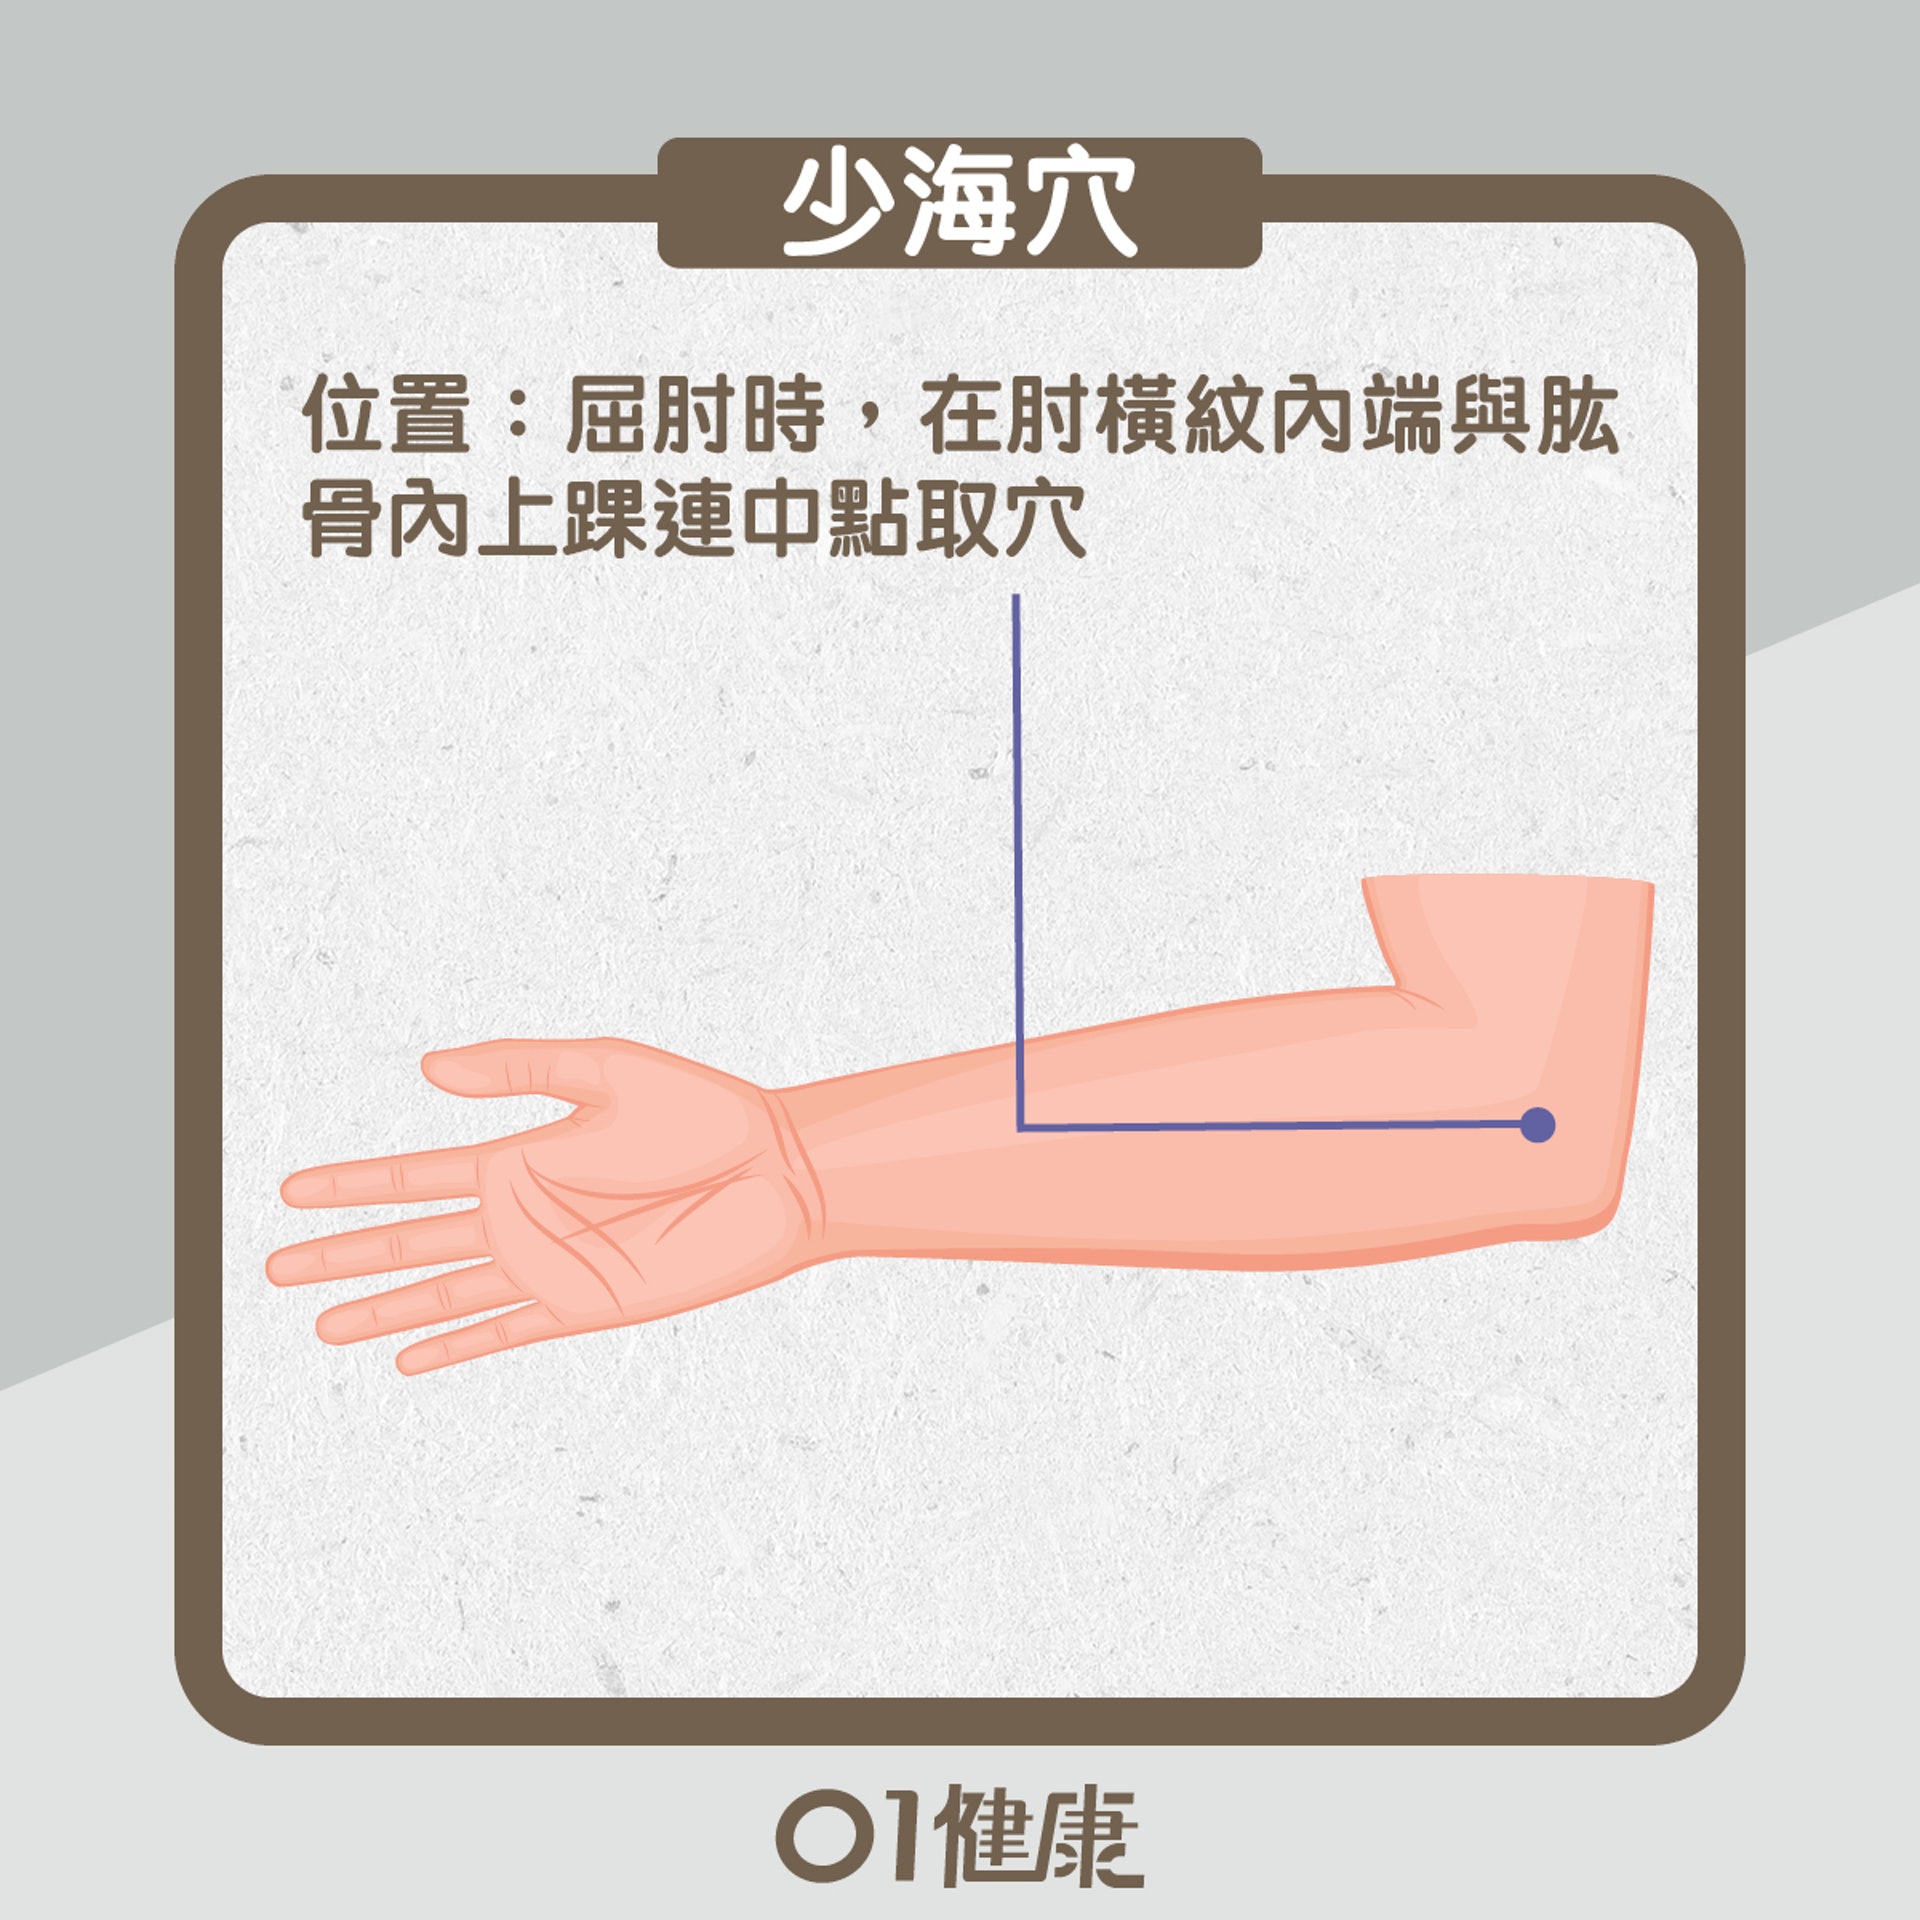 少海穴／位置：屈肘時，在肘橫紋內端與肱骨內上踝連中點取穴（01製圖）